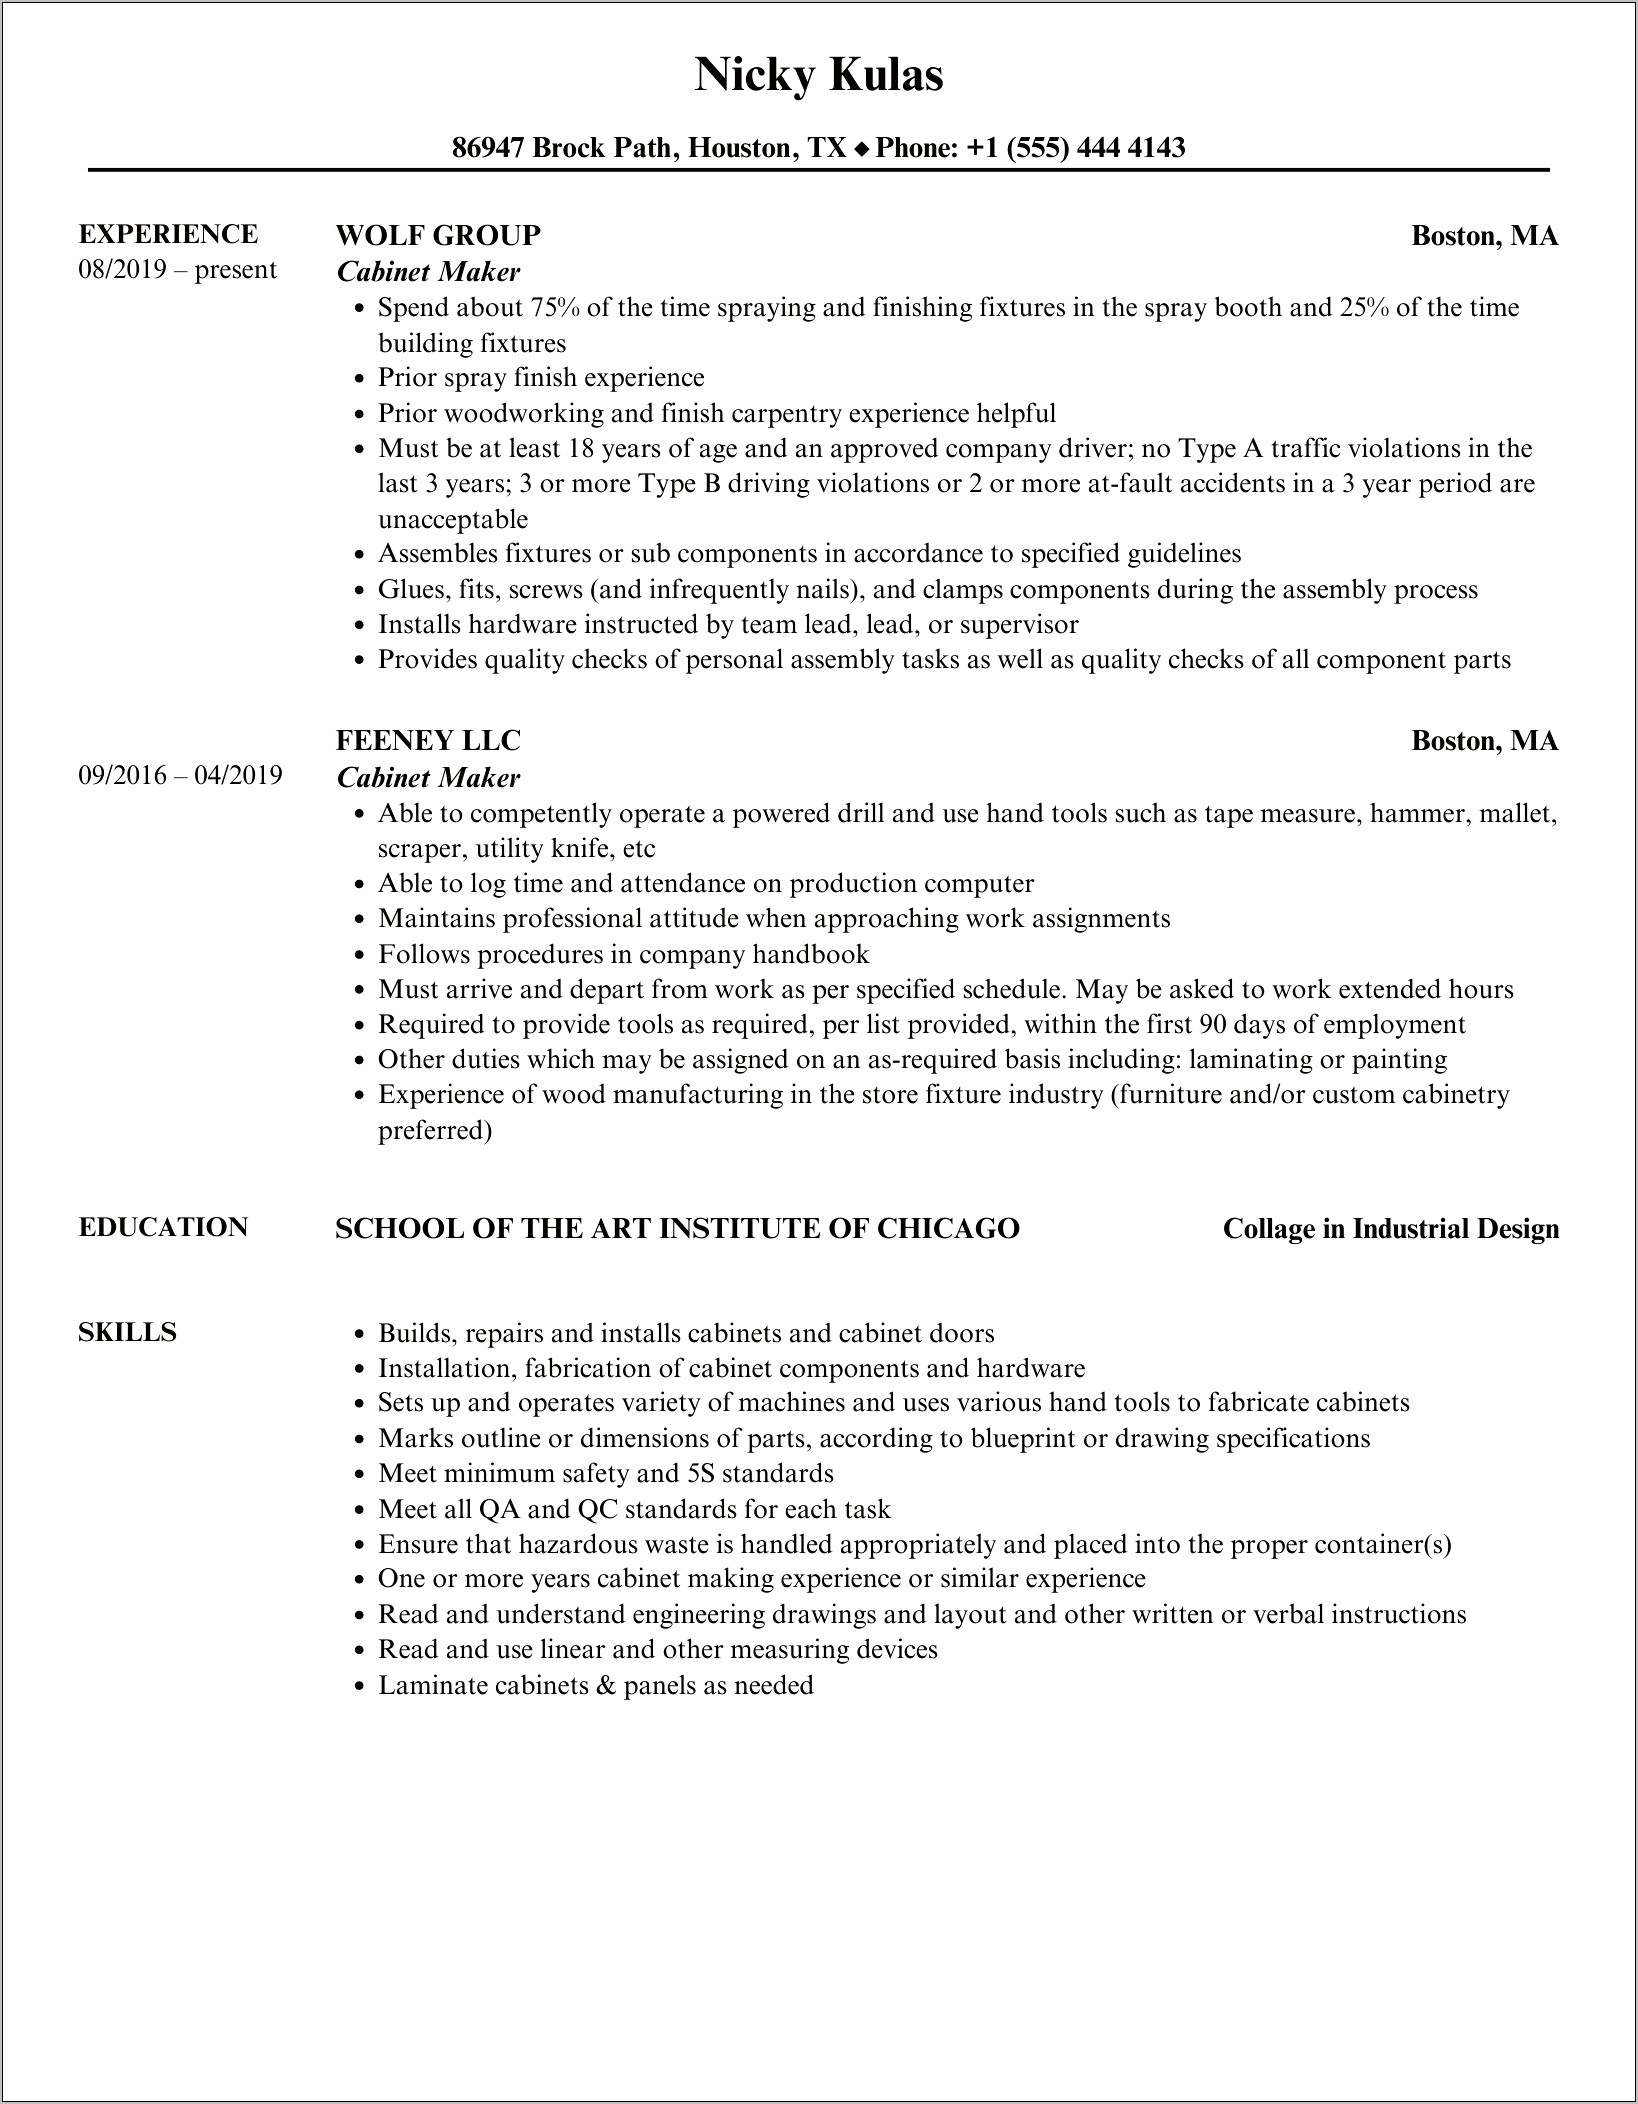 Resume Objective For Cabinet Designer